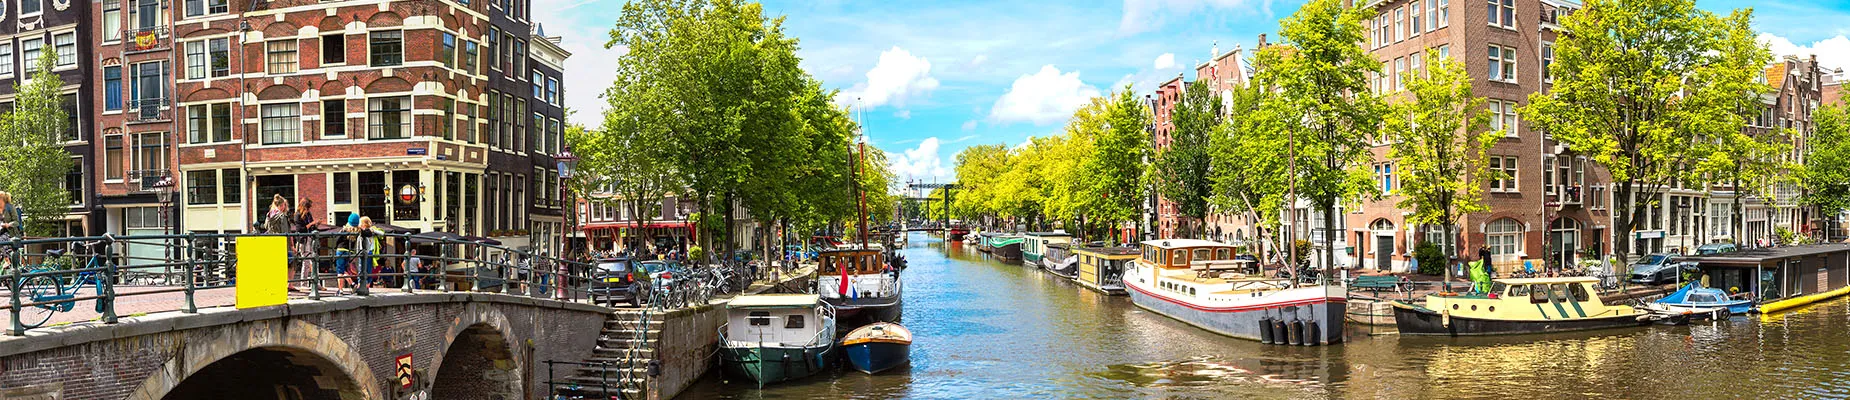 Kanalen van Amsterdam